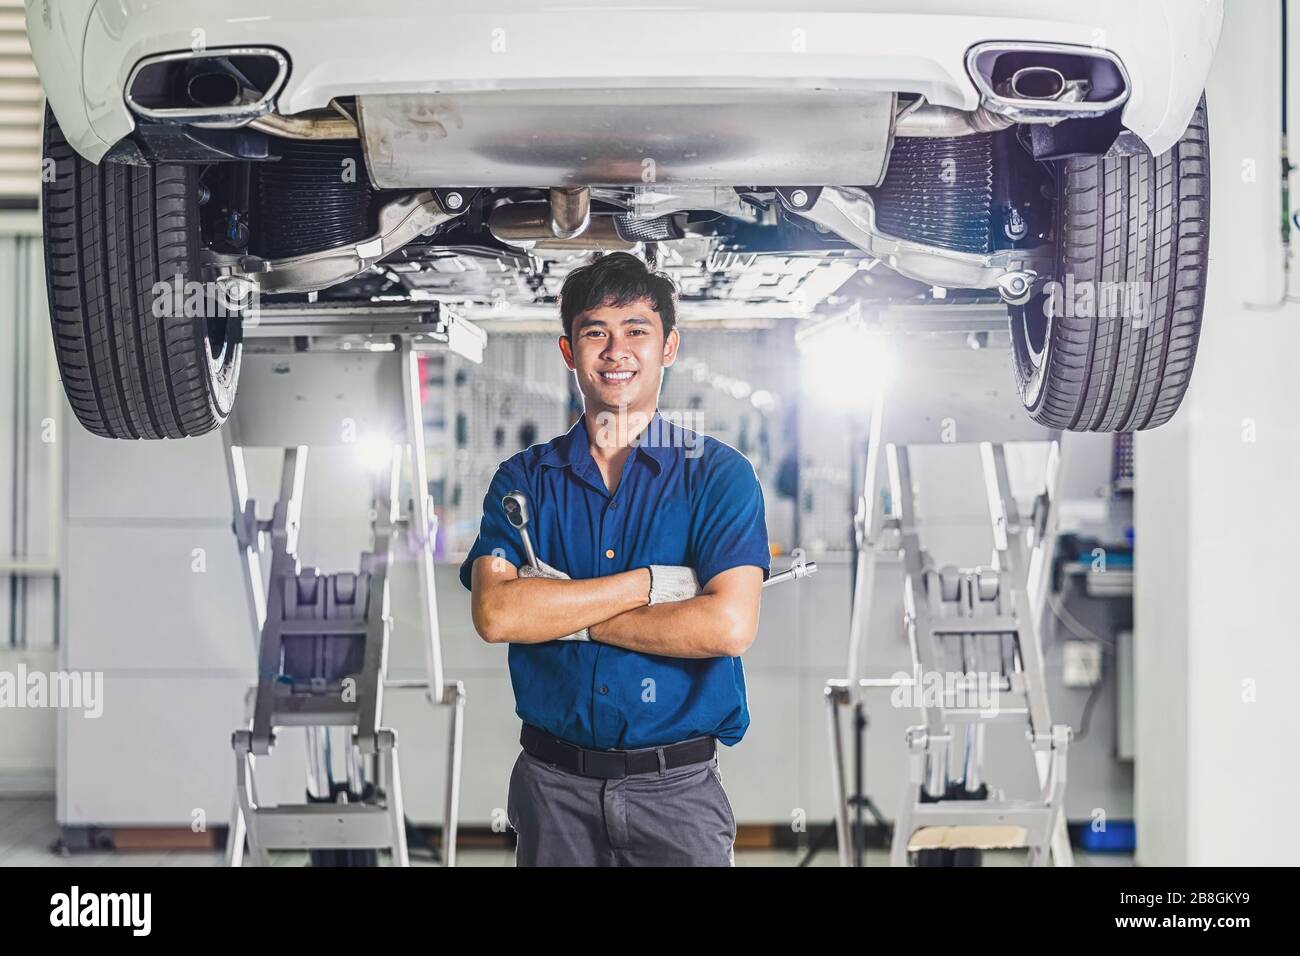 Portrait asiatischer Mechaniker mit Reparaturausrüstung unter dem Auto im Wartungszentrum, das Teil des Ausstellungsraums, Techniker oder Engi ist Stockfoto